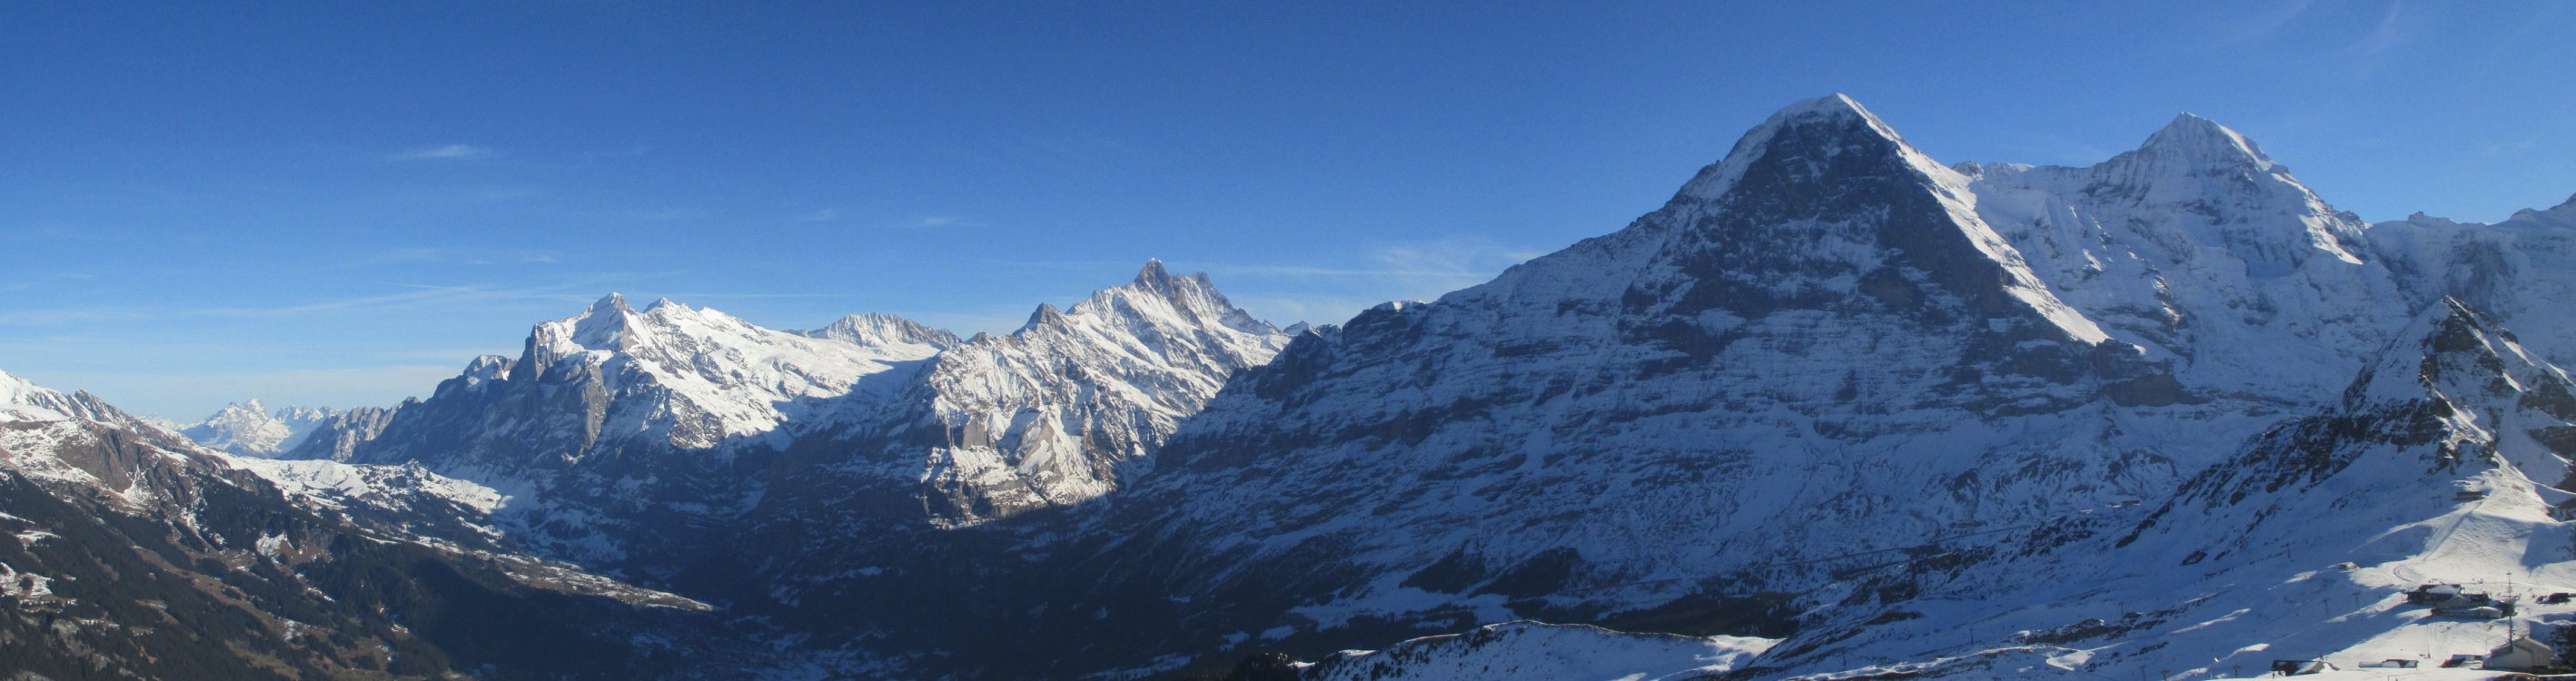 Grindelwald und die Eiger-Nordwand, gesehen vom Männlichen.